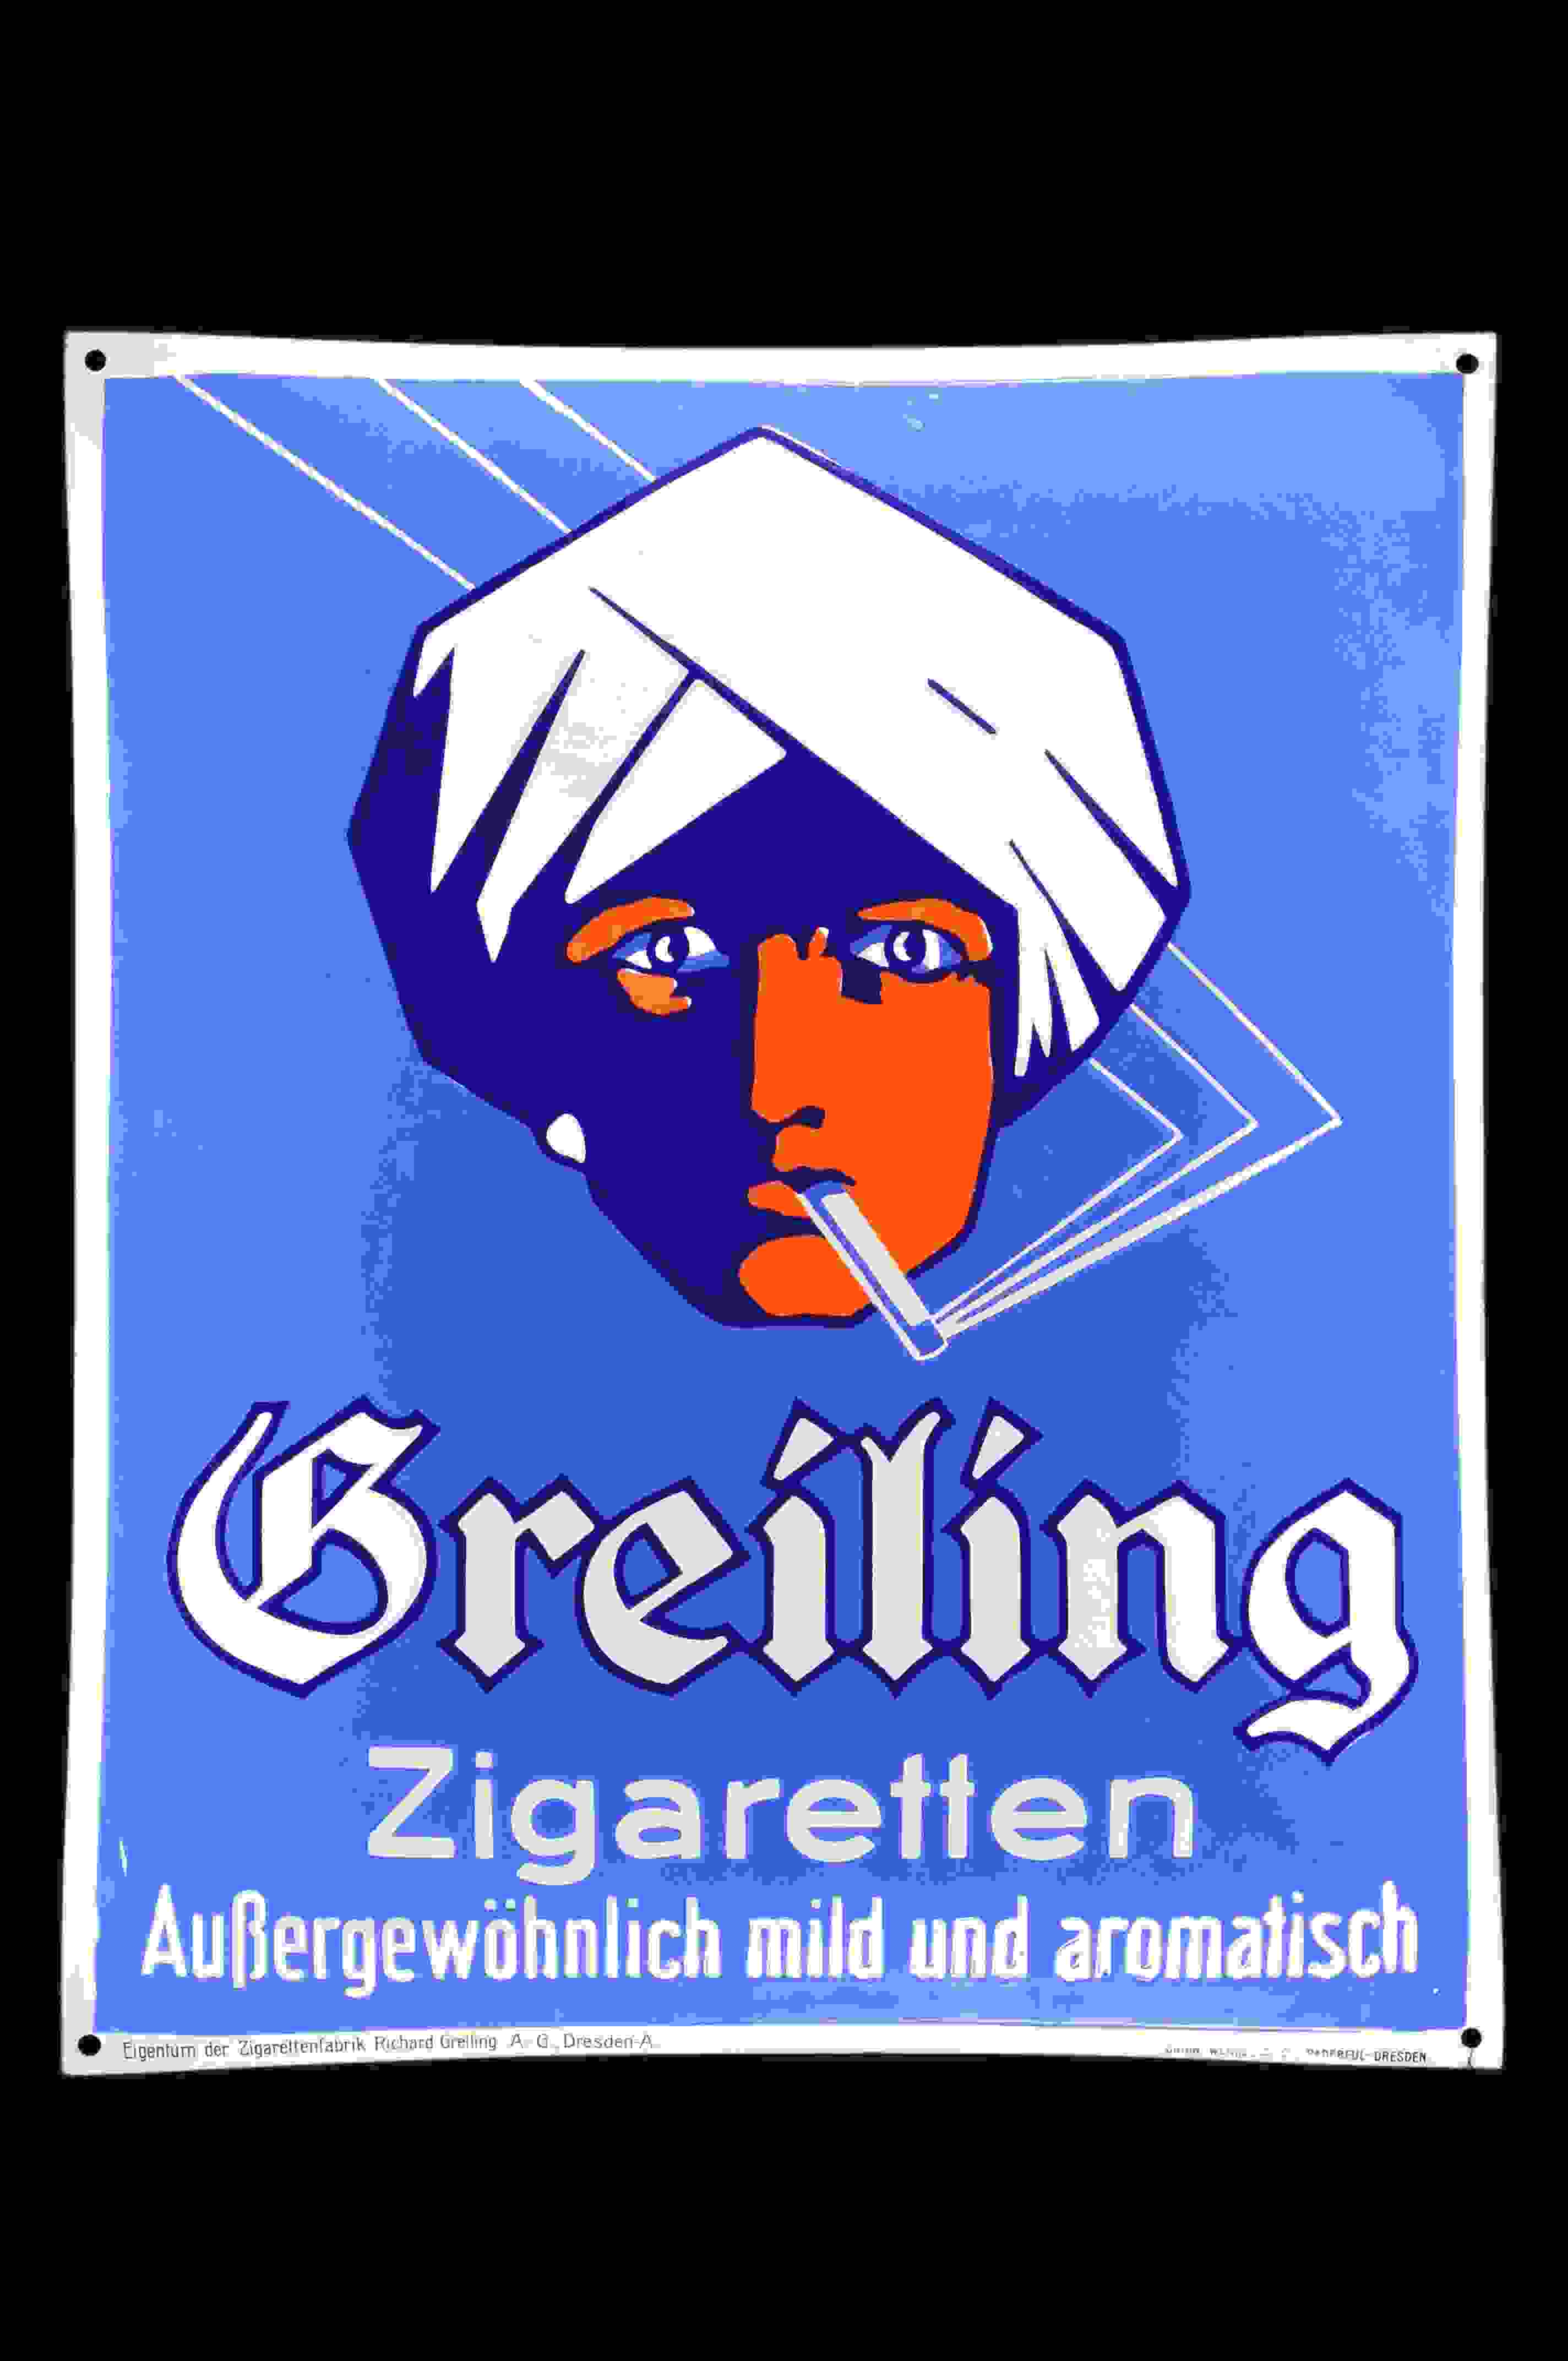 Greiling Cigaretten Außergewöhnlich mild 